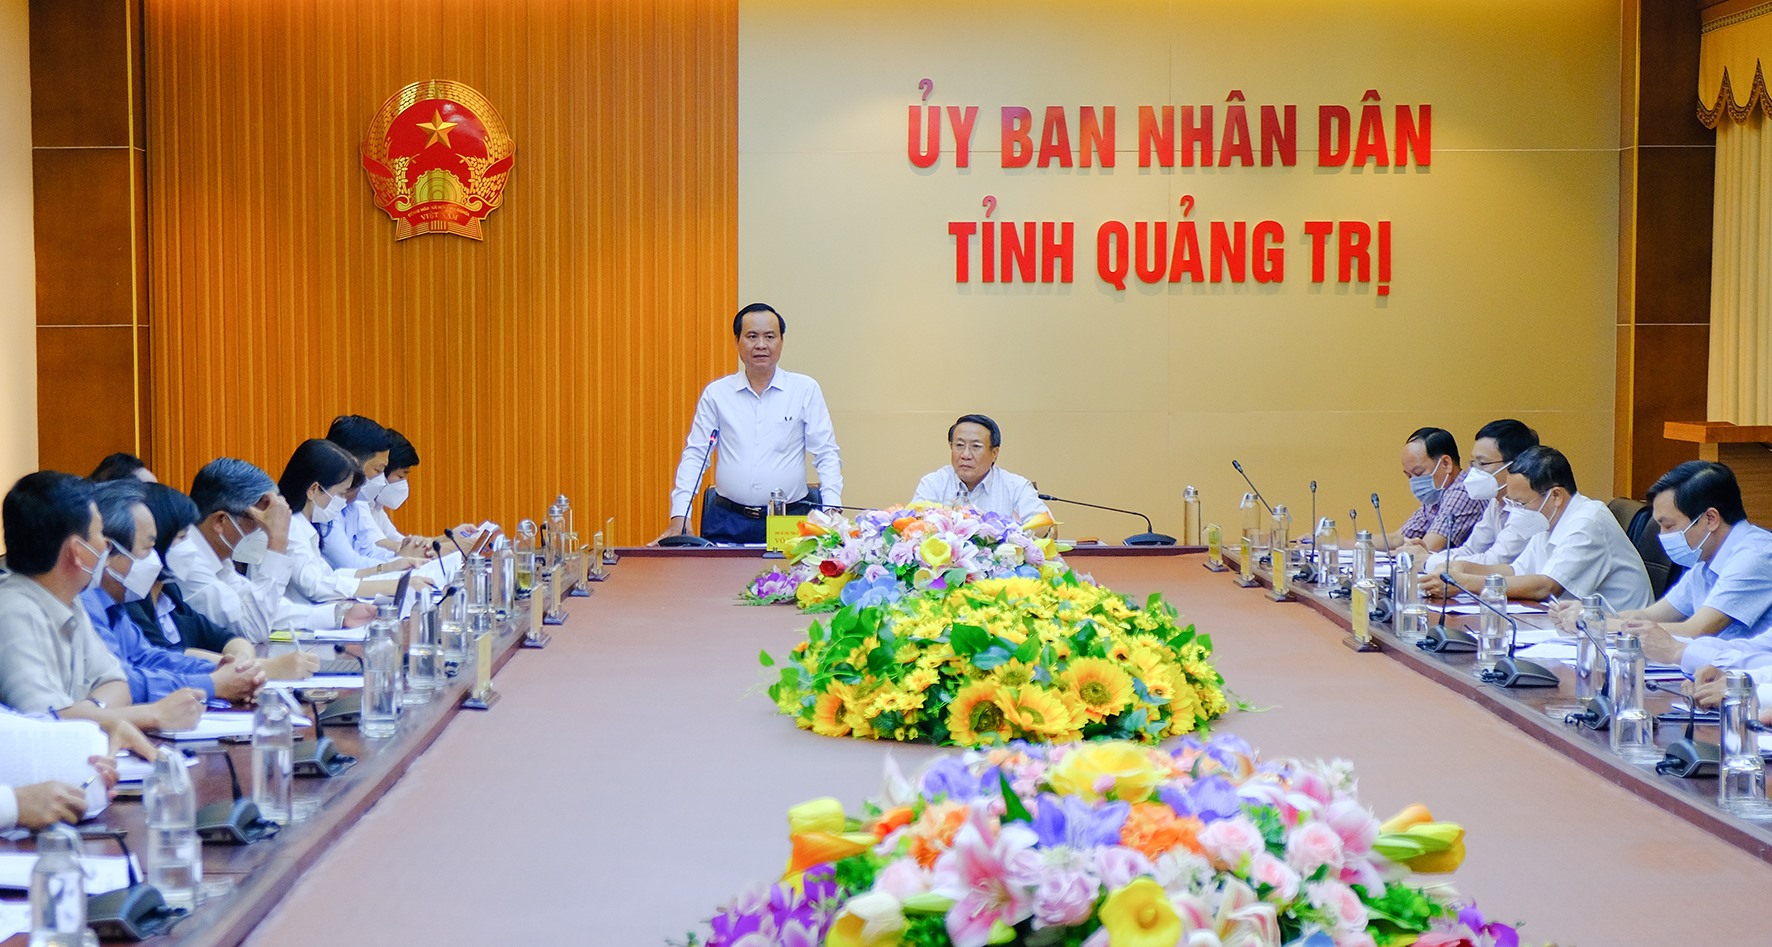 Chủ tịch UBND tỉnh Võ Văn Hưng yêu cầu trước mắt các sở, ban, ngành, địa phương cần rà soát, thống kê thiệt hại, đề xuất hỗ trợ khôi phục sản xuất - Ảnh: Trần Tuyền